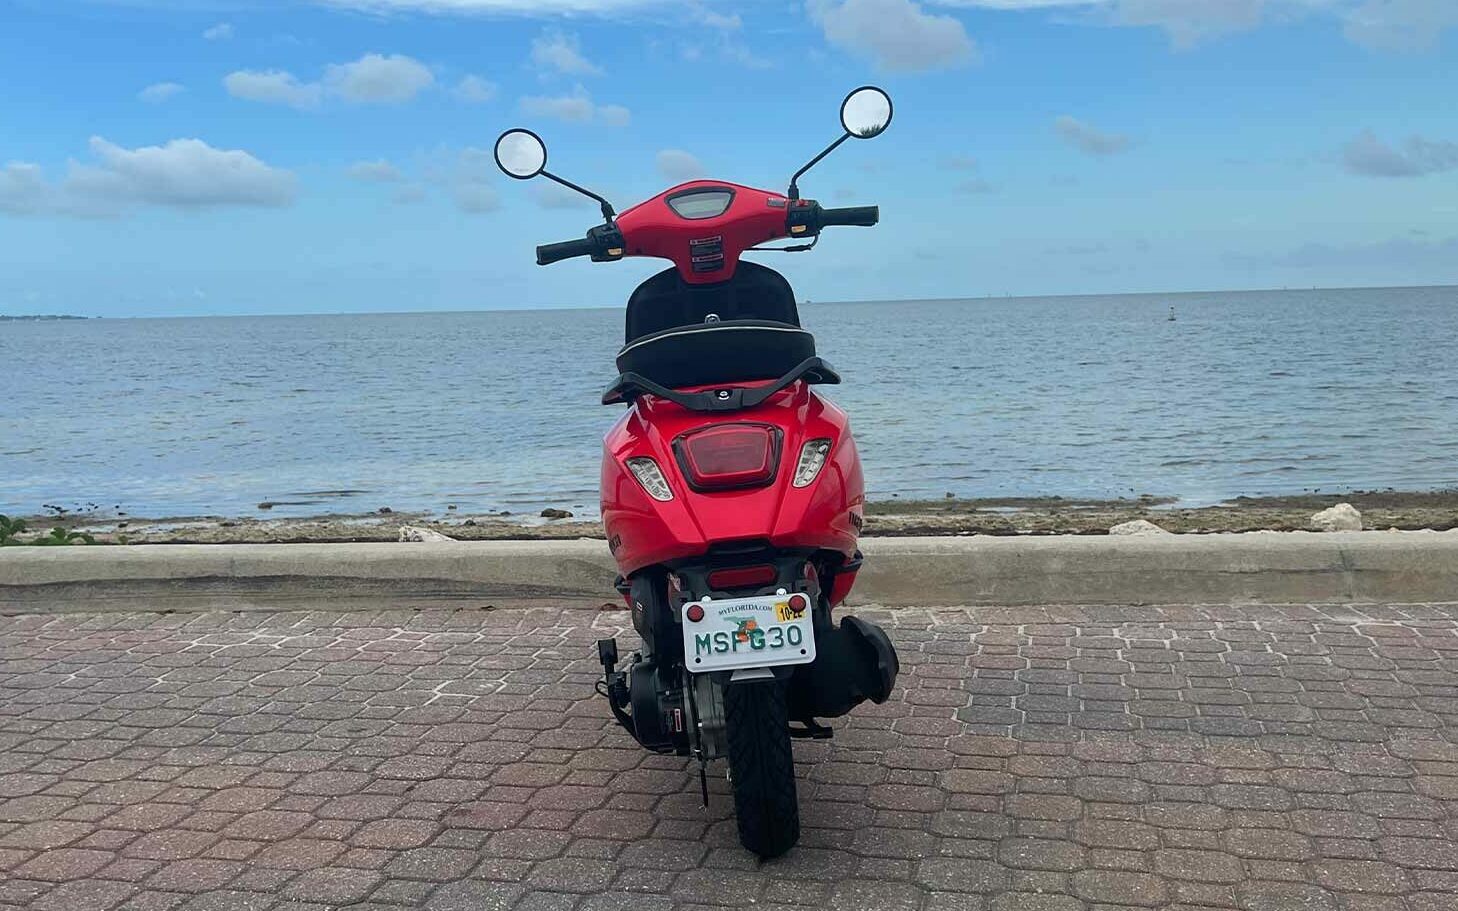 italica-age-50cc-scooter-rental-miami-back